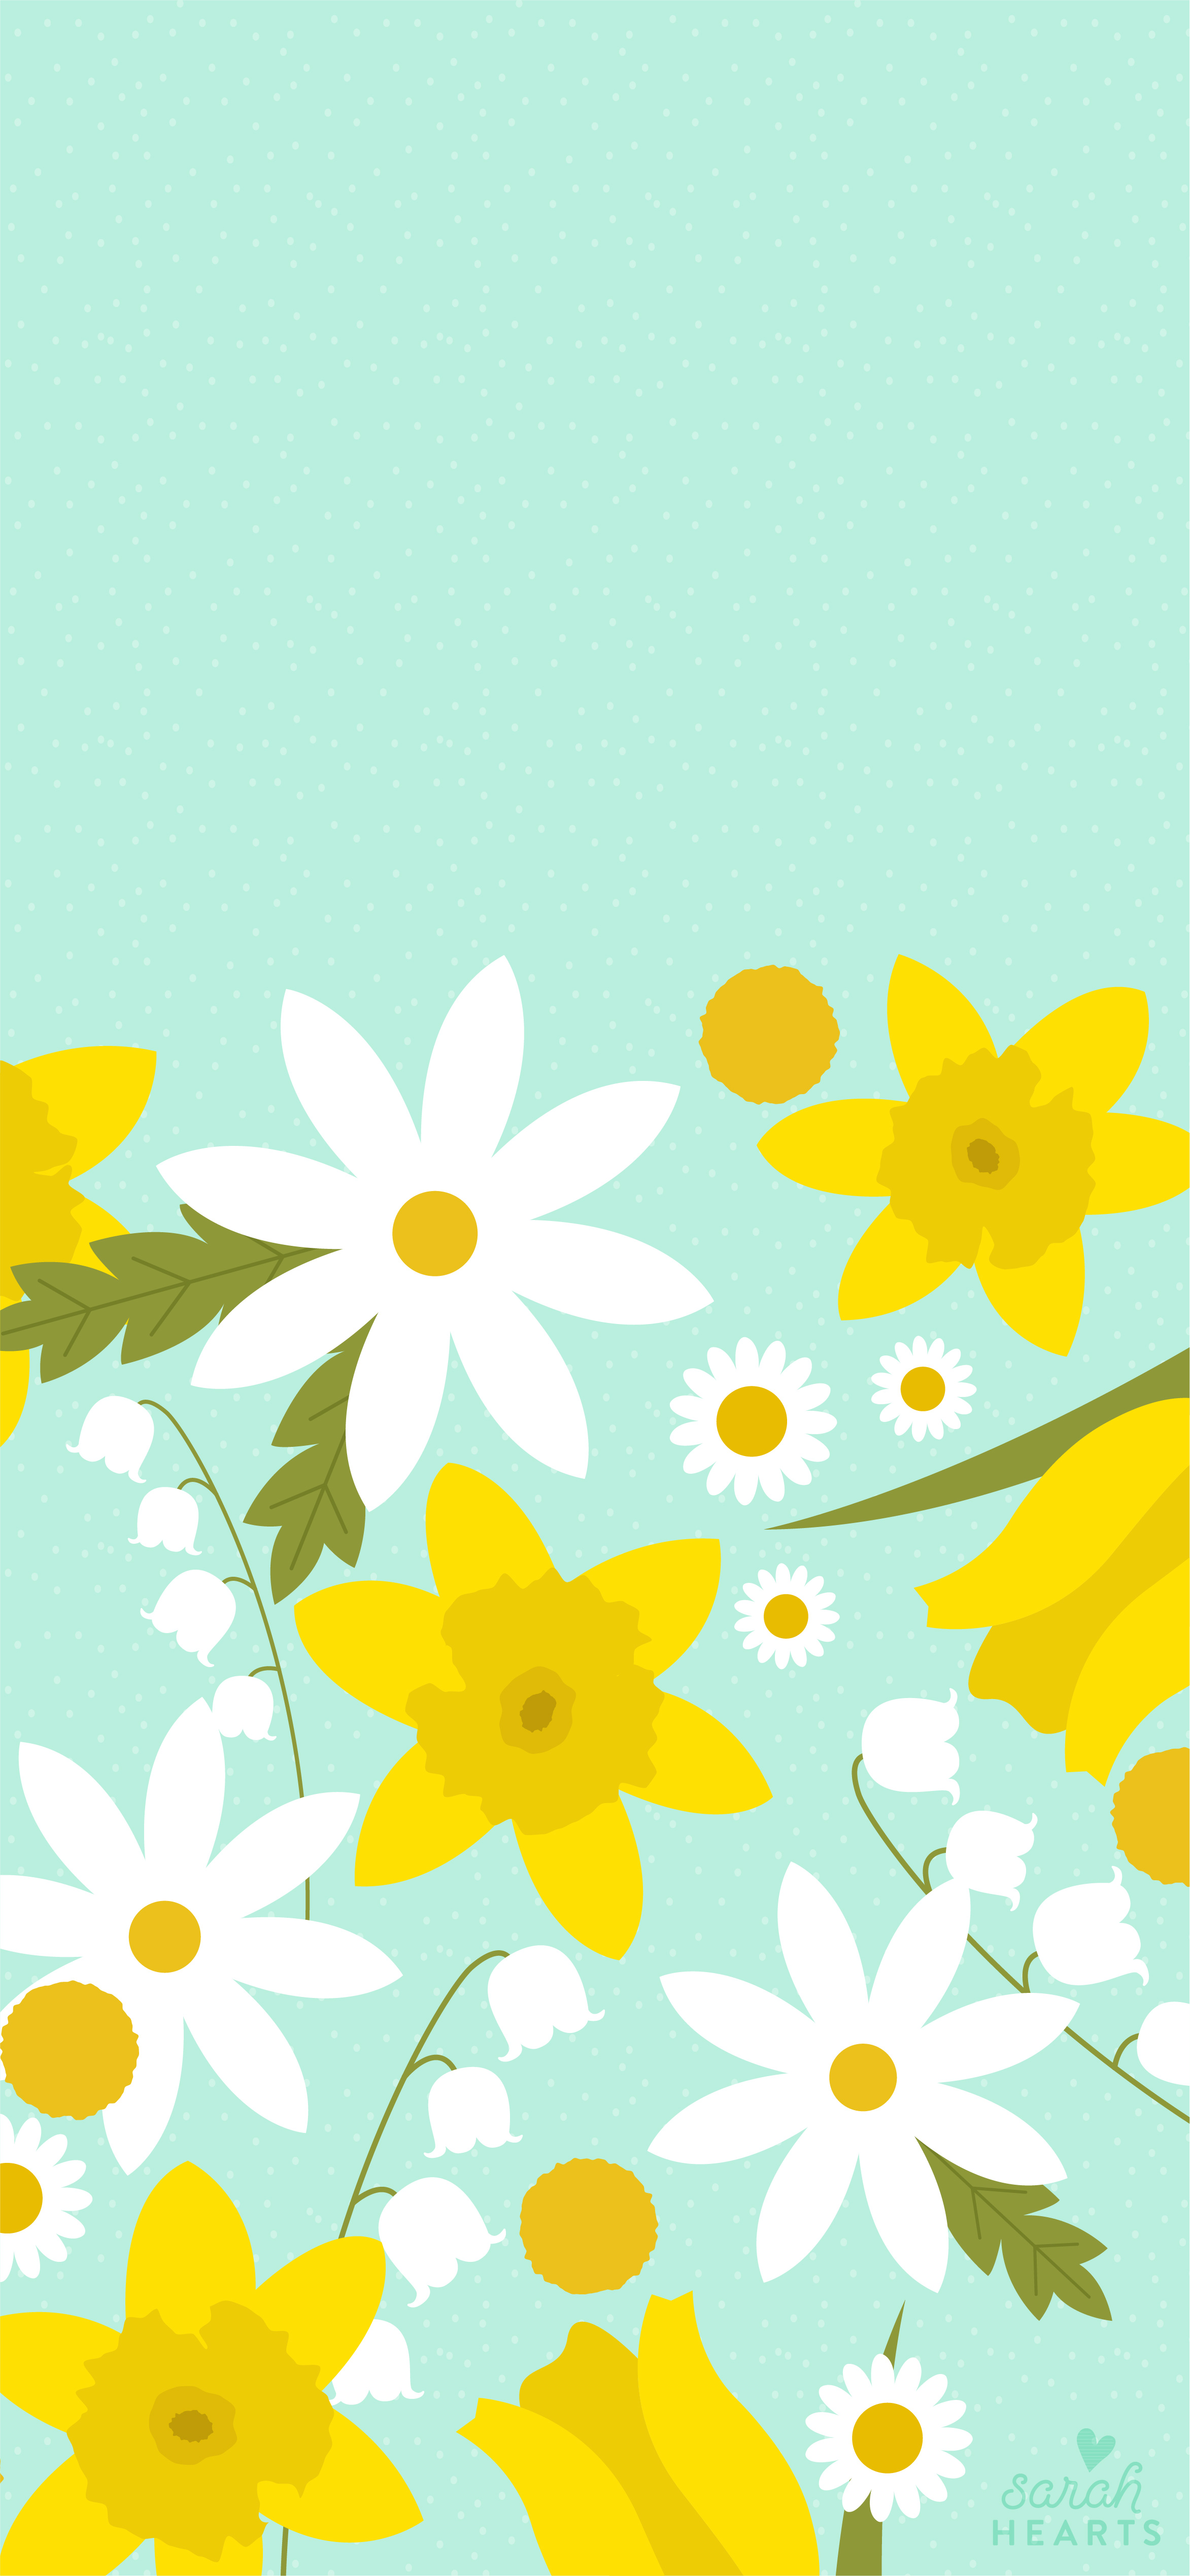 Đón mùa xuân đầu tiên của năm với những hình ảnh tươi đẹp và hoa xuân rực rỡ trên lịch tháng 3 chủ đề hoa xuân. Sự kết hợp giữa hoa và mùa xuân sẽ mang đến cho bạn cảm giác tươi mới và vô cùng sảng khoái. Hãy để cho mọi người đều phải ngưỡng mộ với lịch tháng thật đẹp và lãng mạn của bạn!